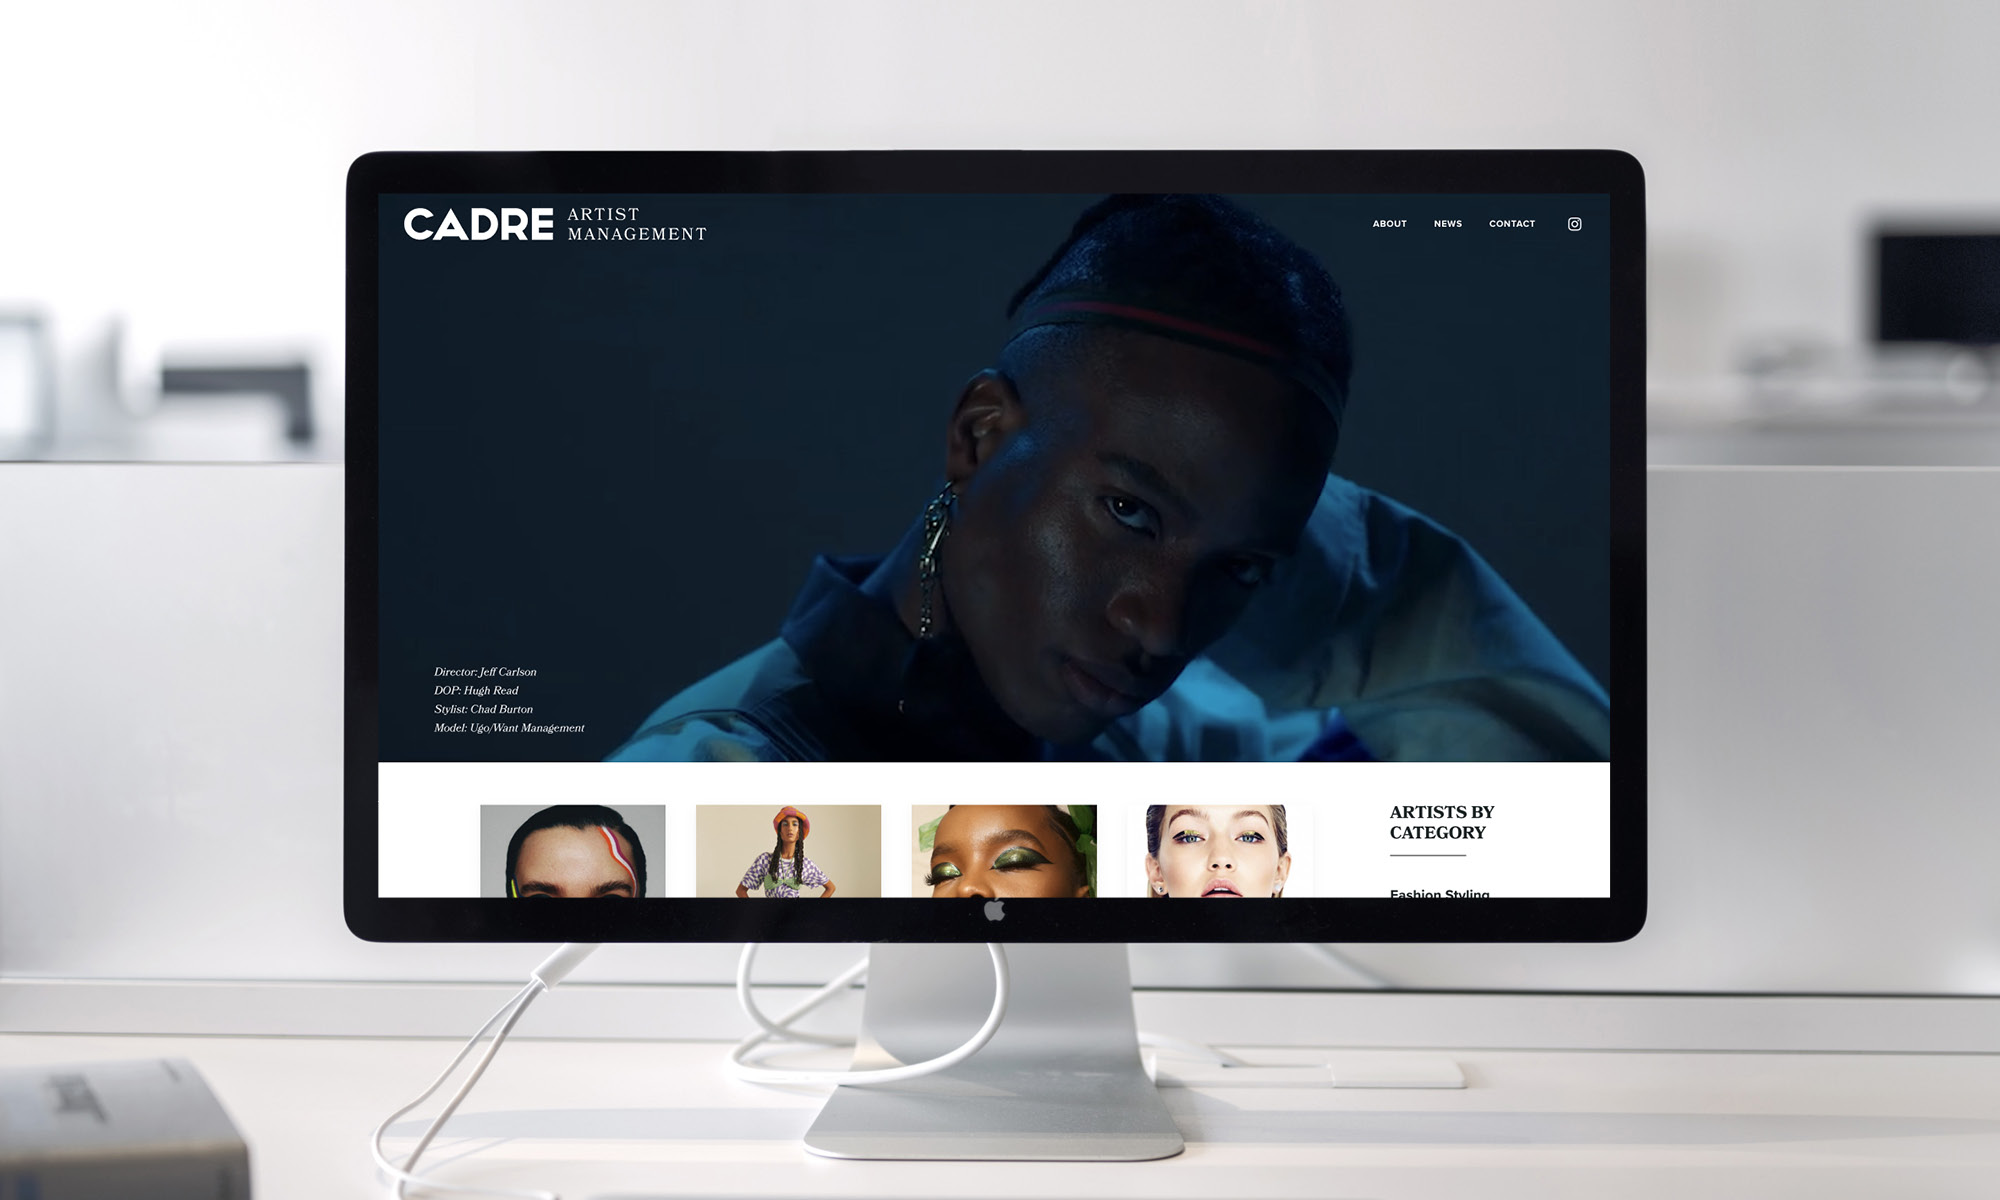 FT_CADRE-artist-management-website-design